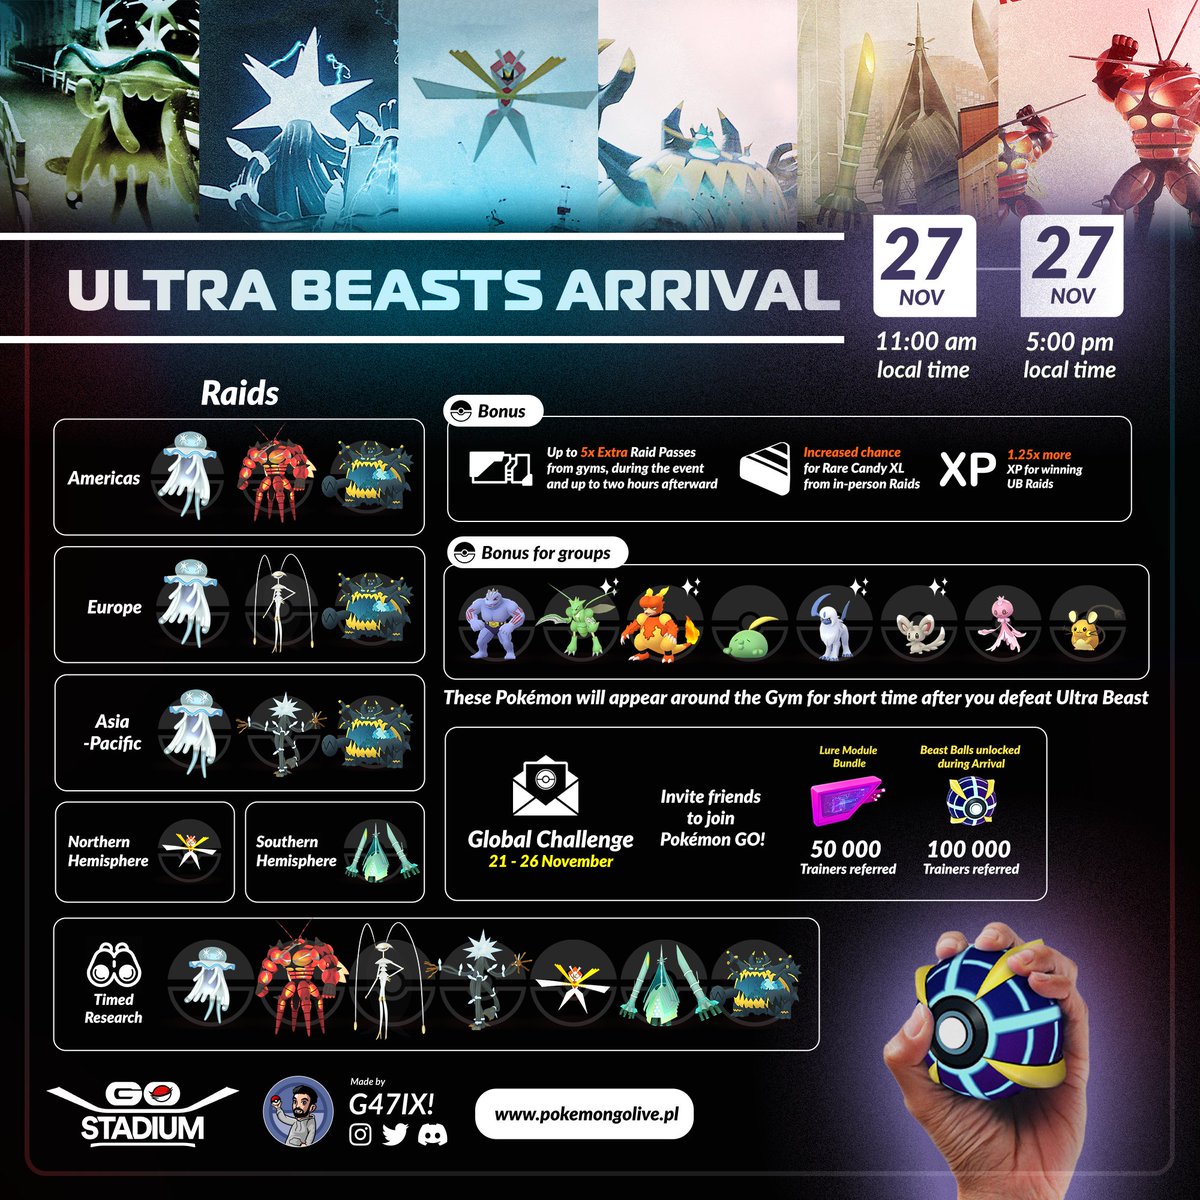 Pokémon GO - Ultra Beast Arrival: Global - Sunday, November 27th